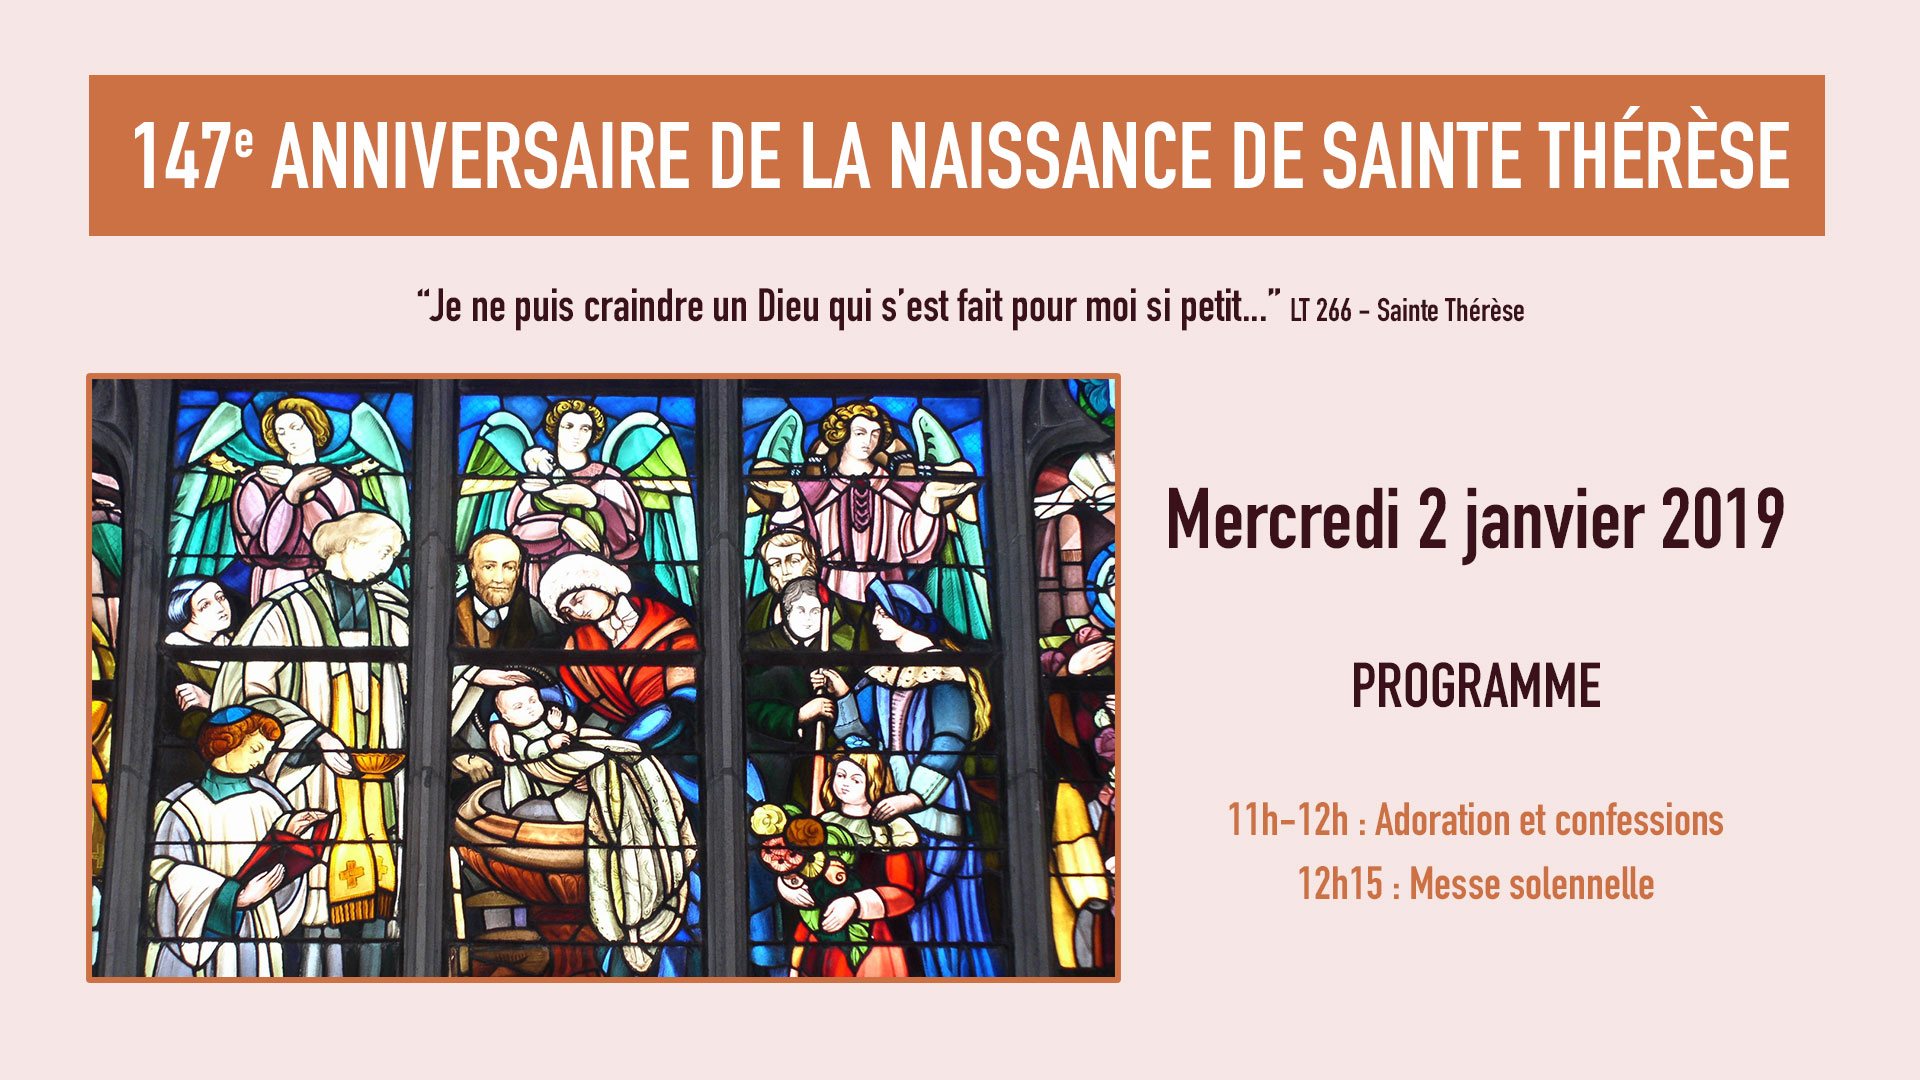 Naissance de sainte Thérèse : 147e anniversaire le 2 janvier 2019 au Sanctuaire d’Alençon (61)